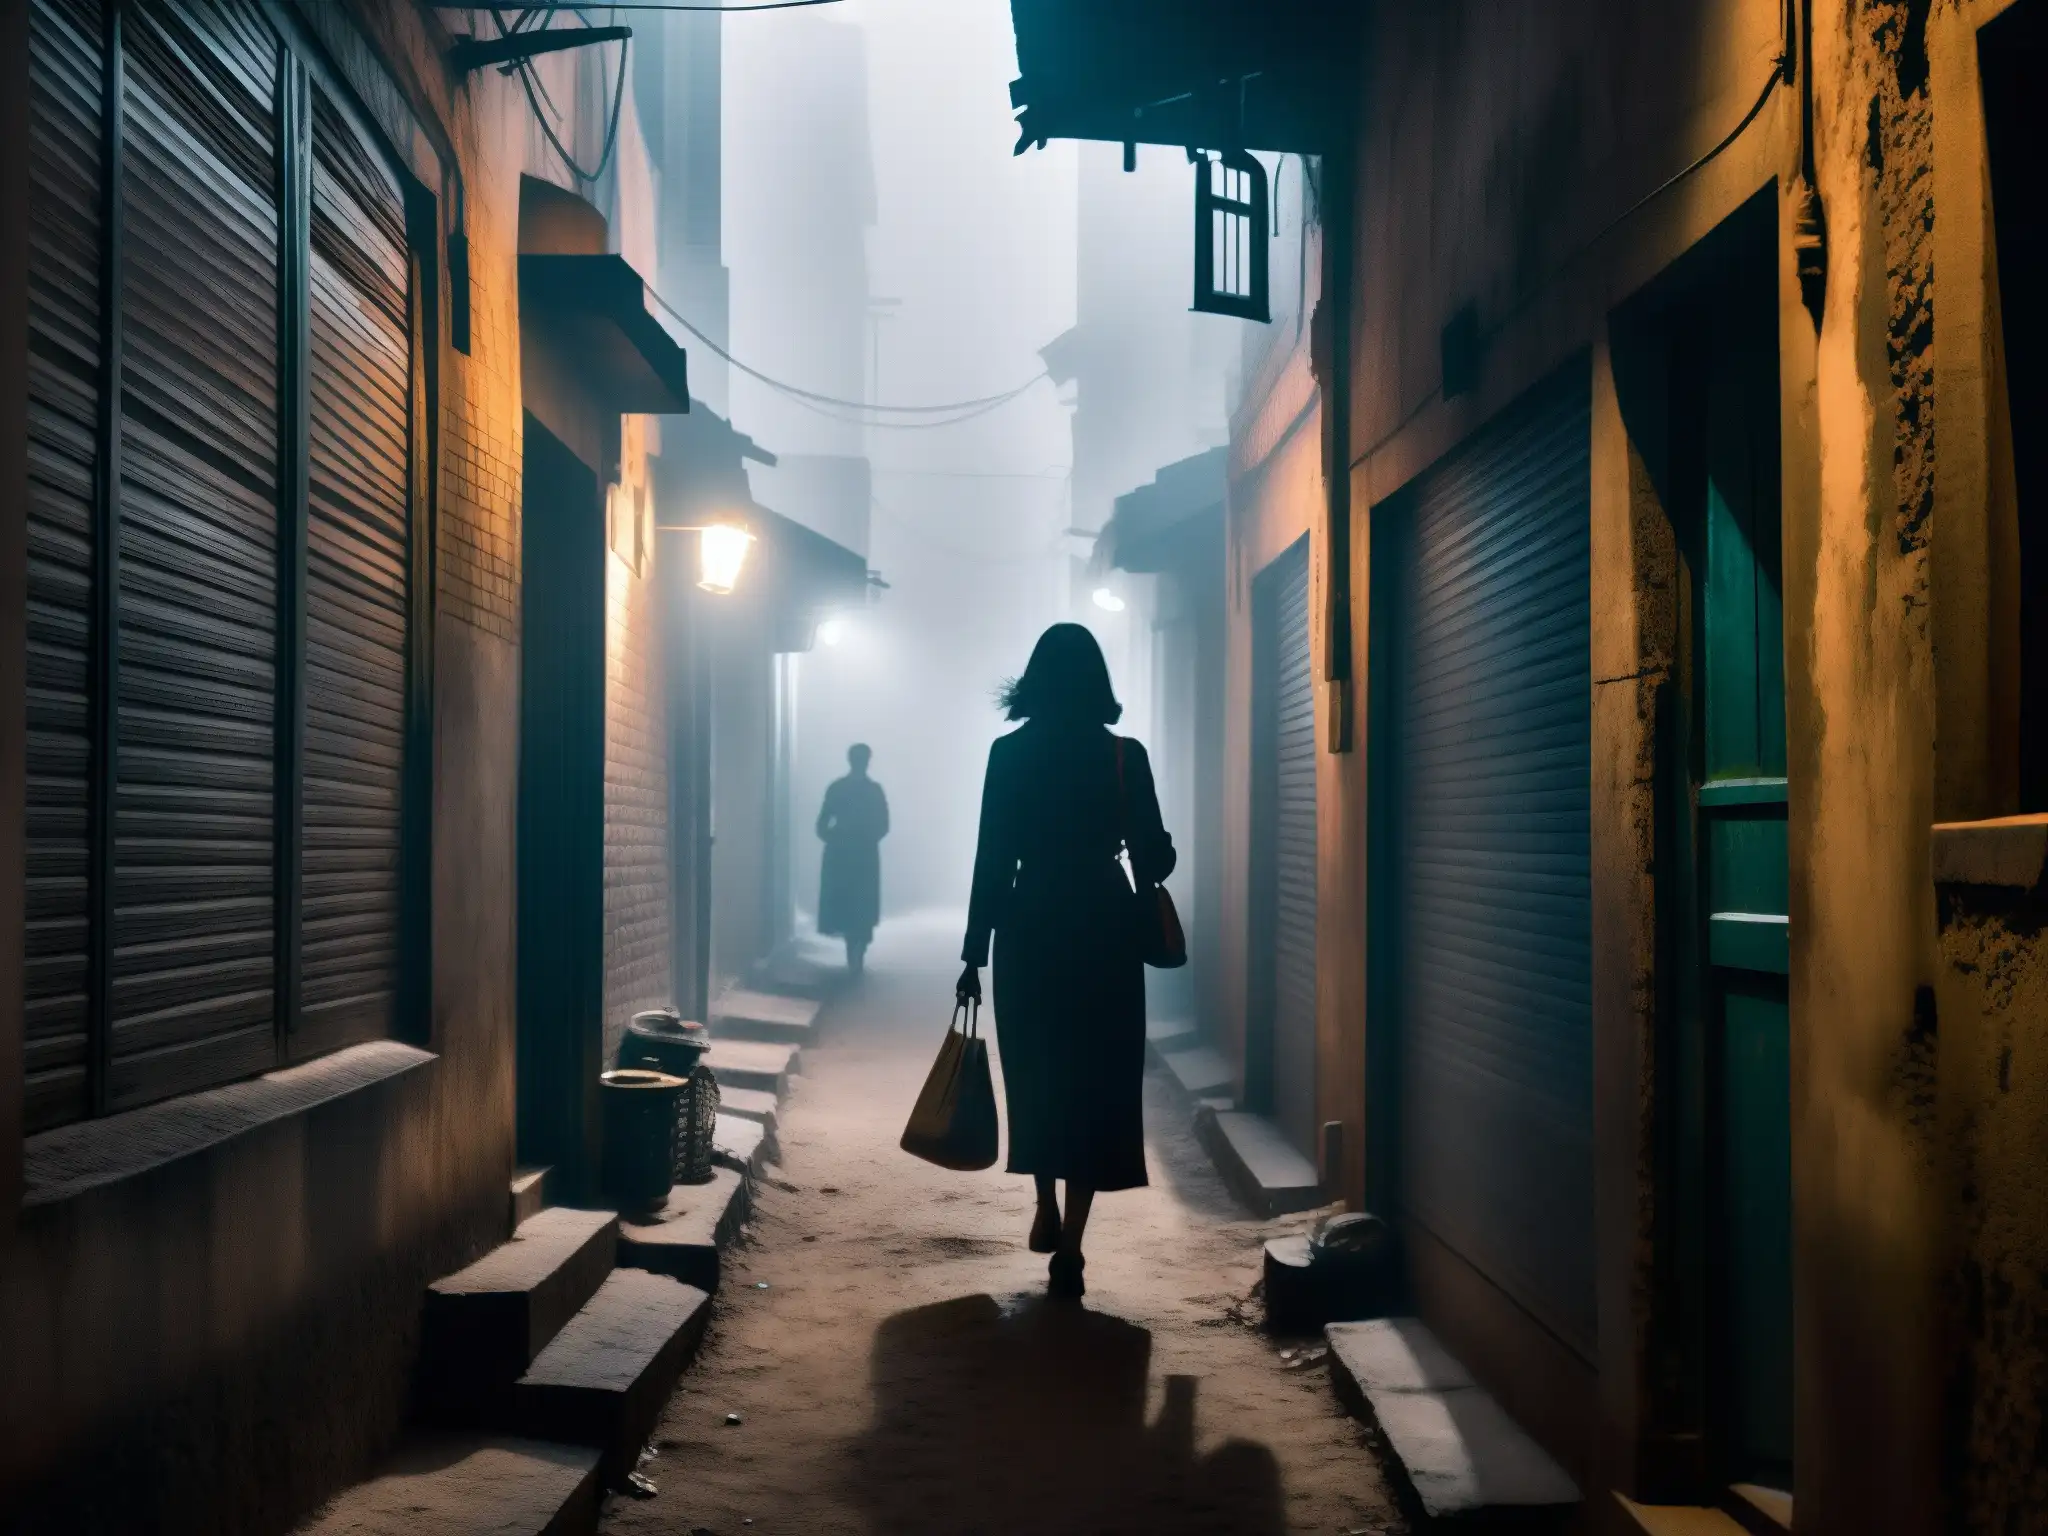 Enigmática callejuela de Delhi, con sombras y neblina, evocando la leyenda urbana de la Mujer sin Cabeza